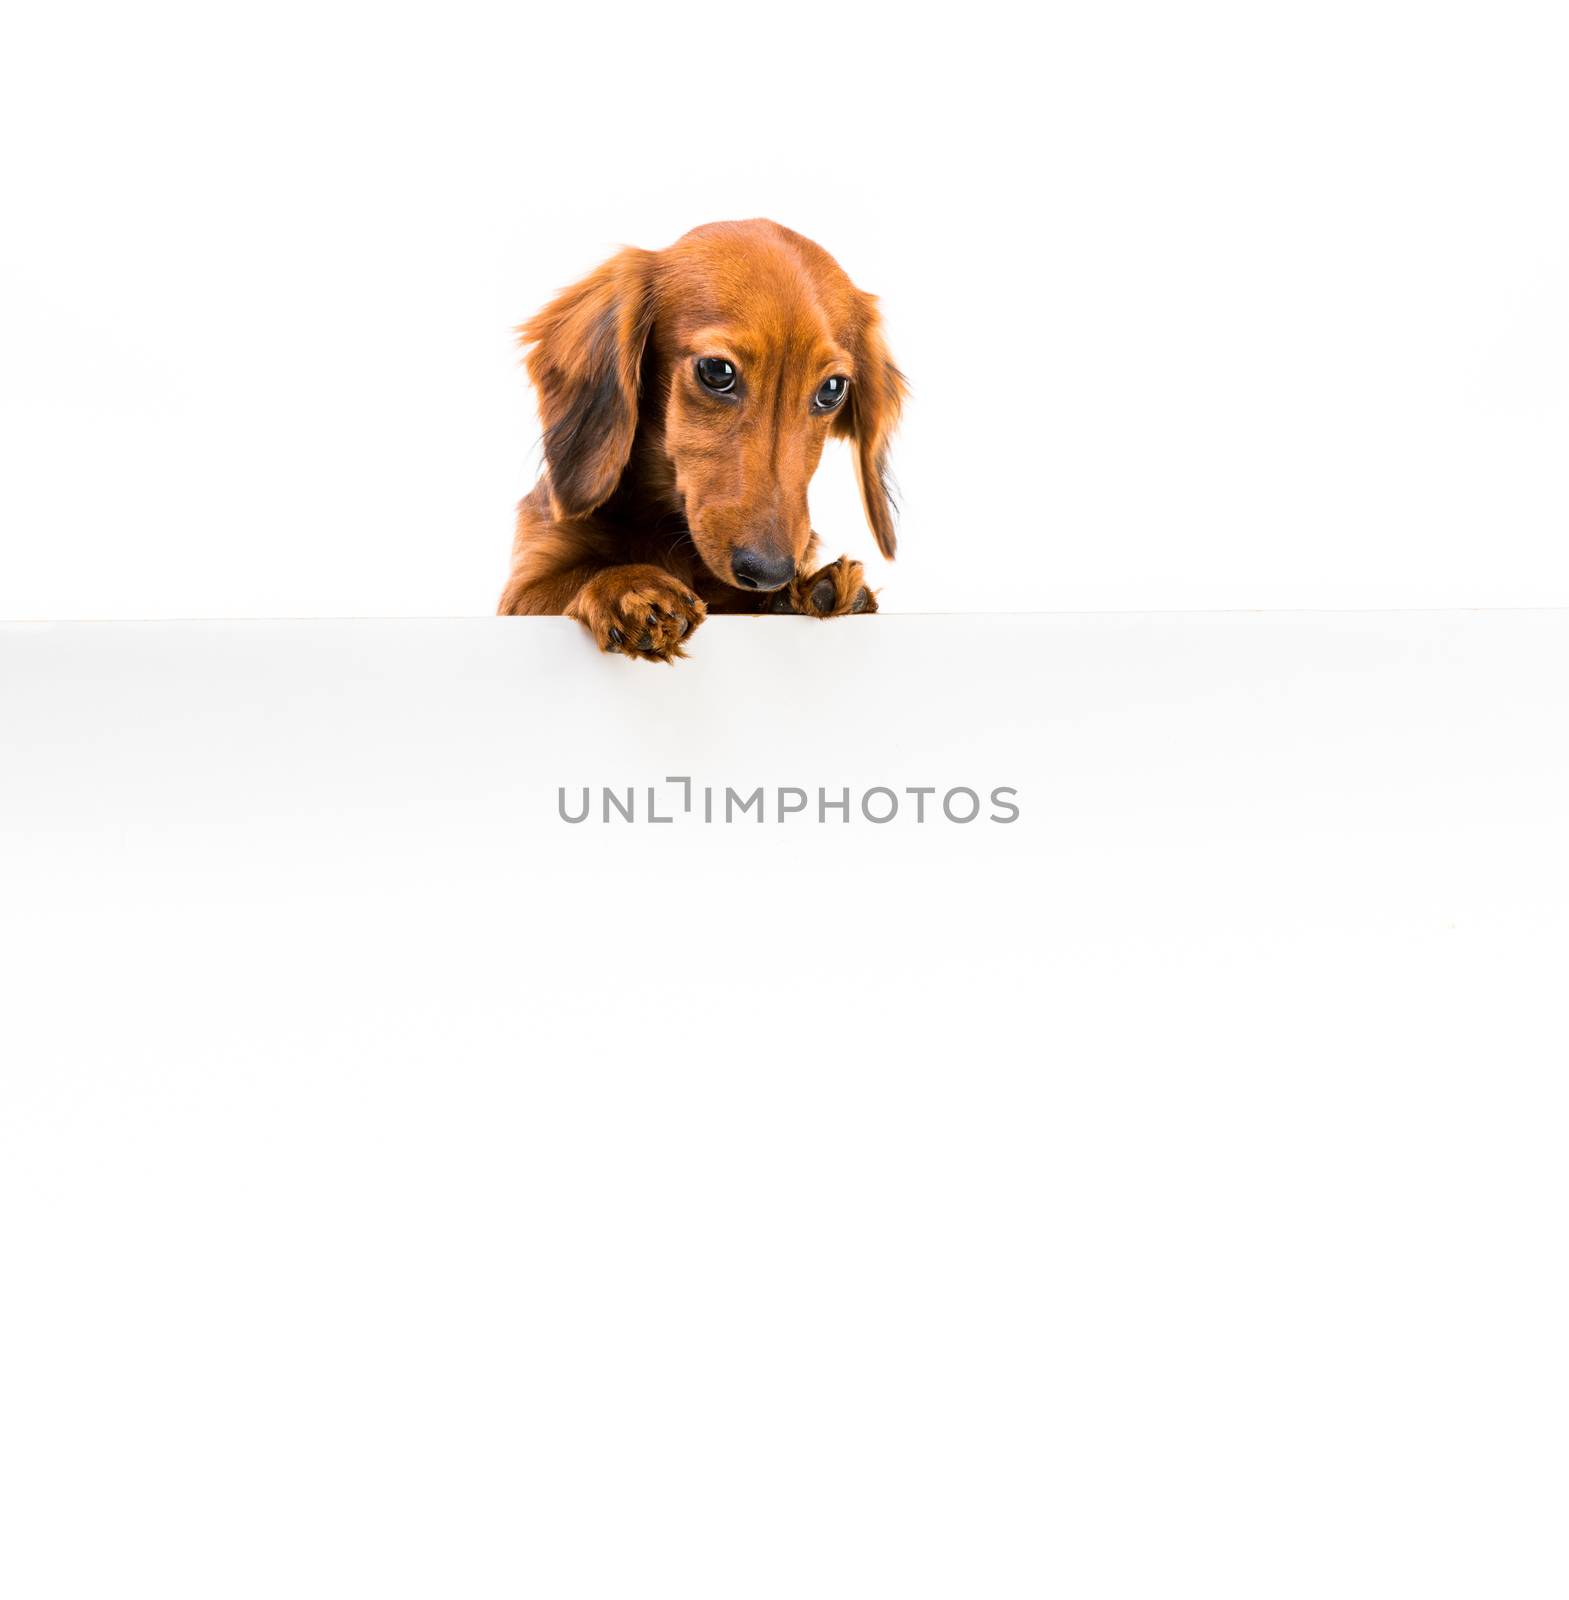 red dog breed dachshund by GekaSkr